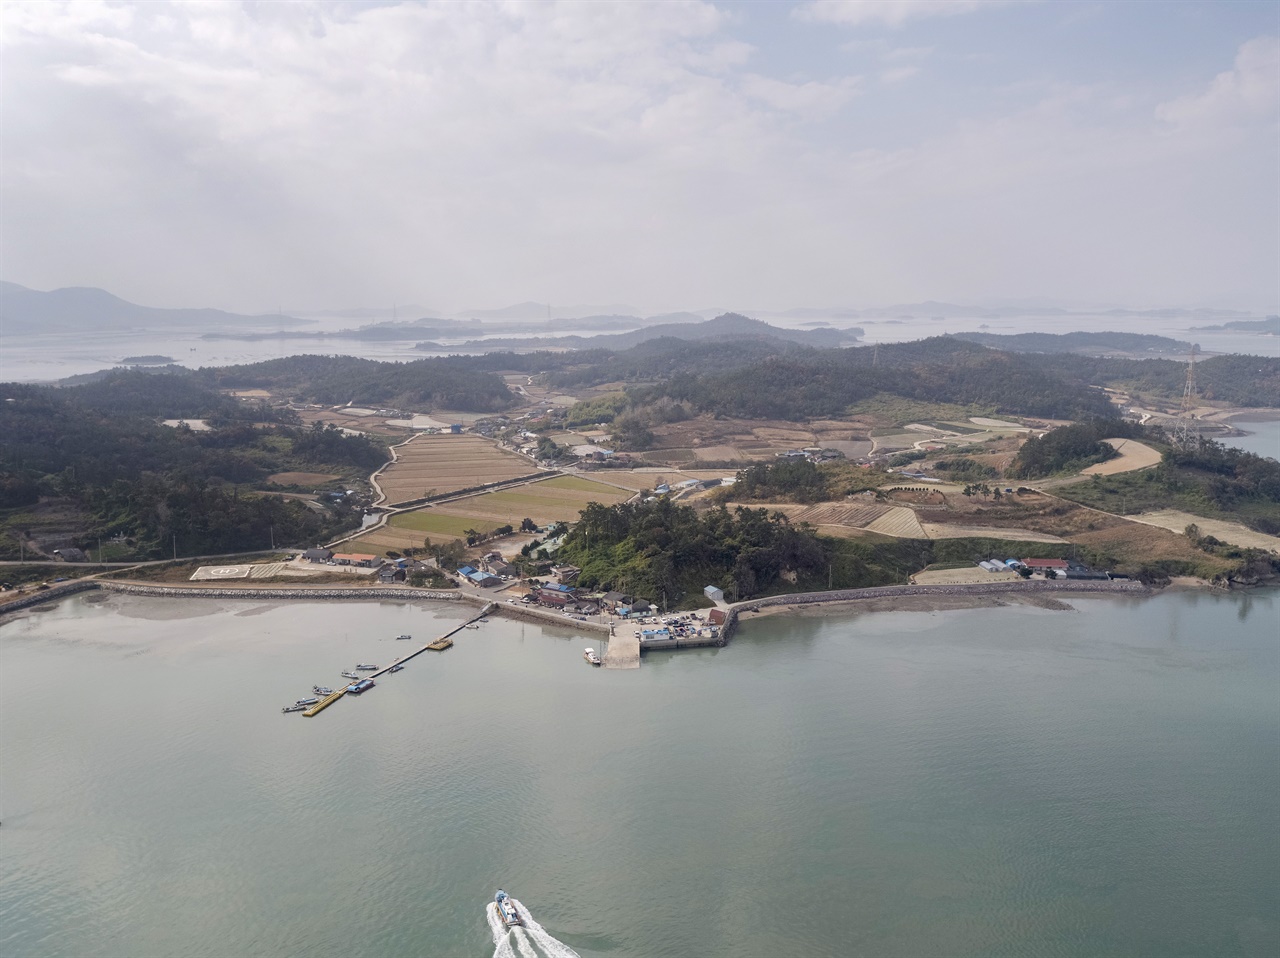 고이도(위)와 무안군 운남면 사이에 있는 해협. 아래쪽 튀어나온 곳이
신월리 선착장.